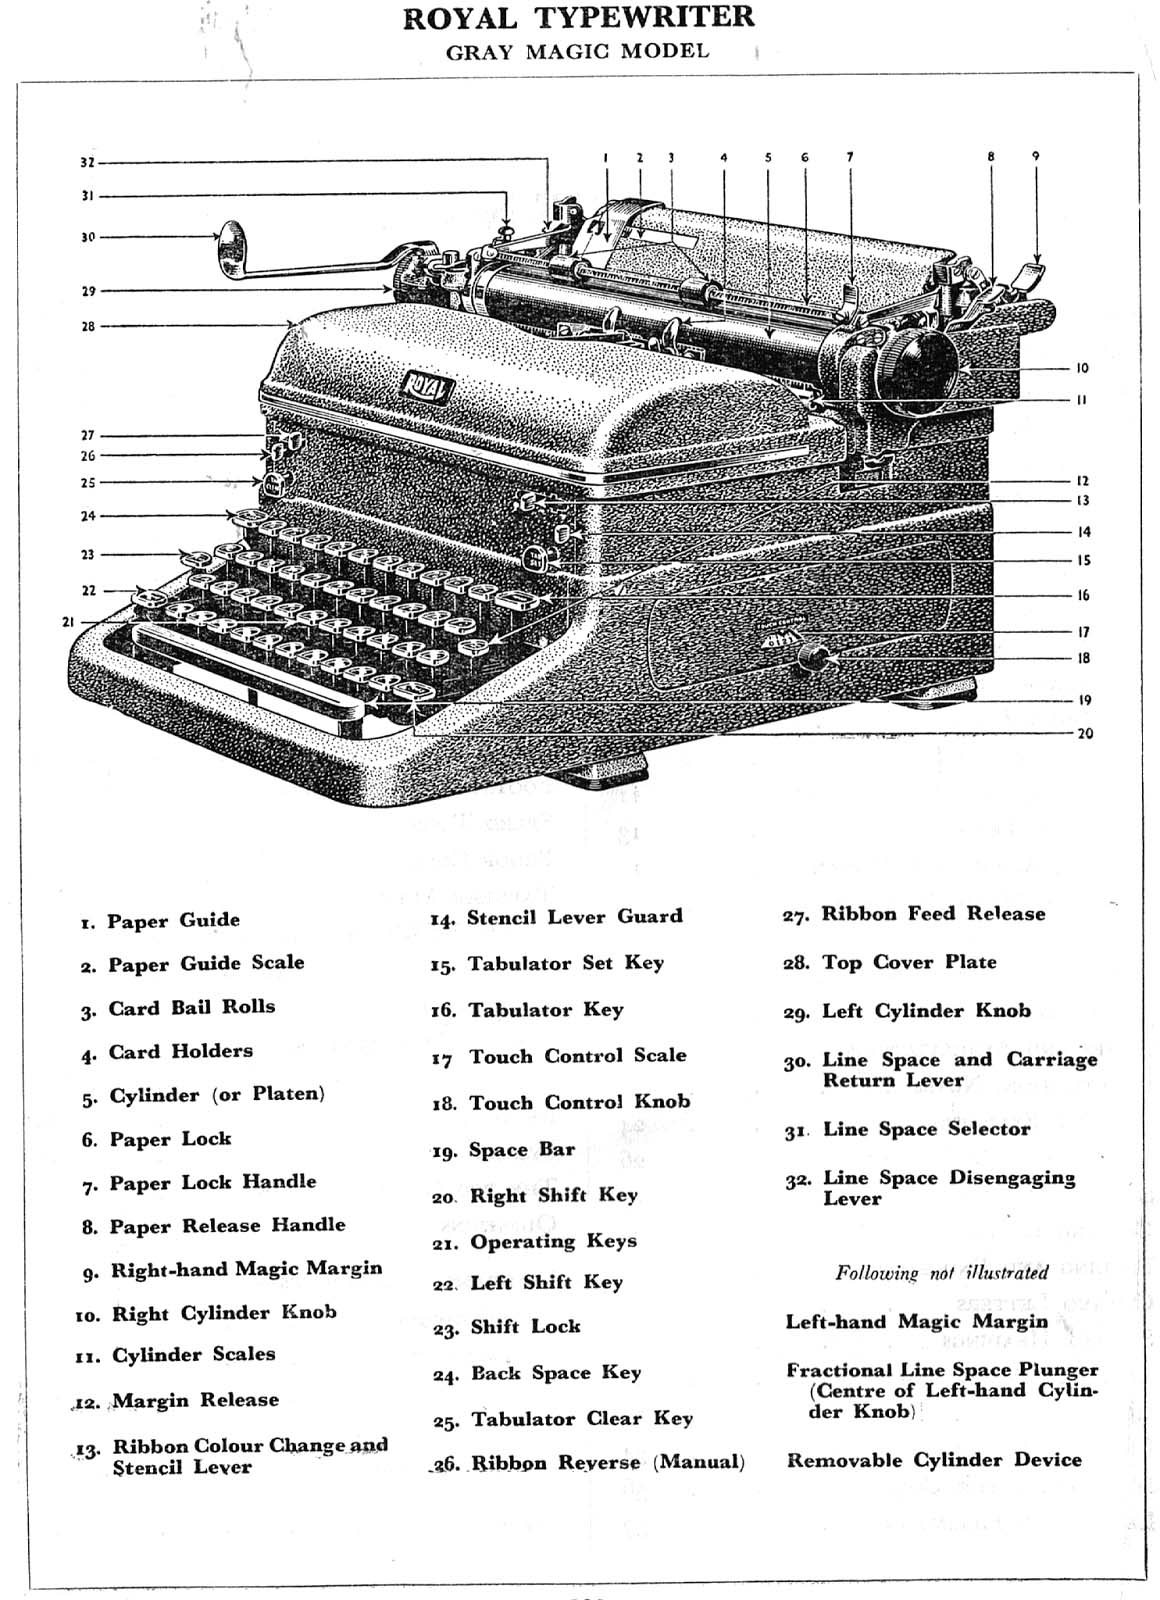 Royal typewriter manual pdf